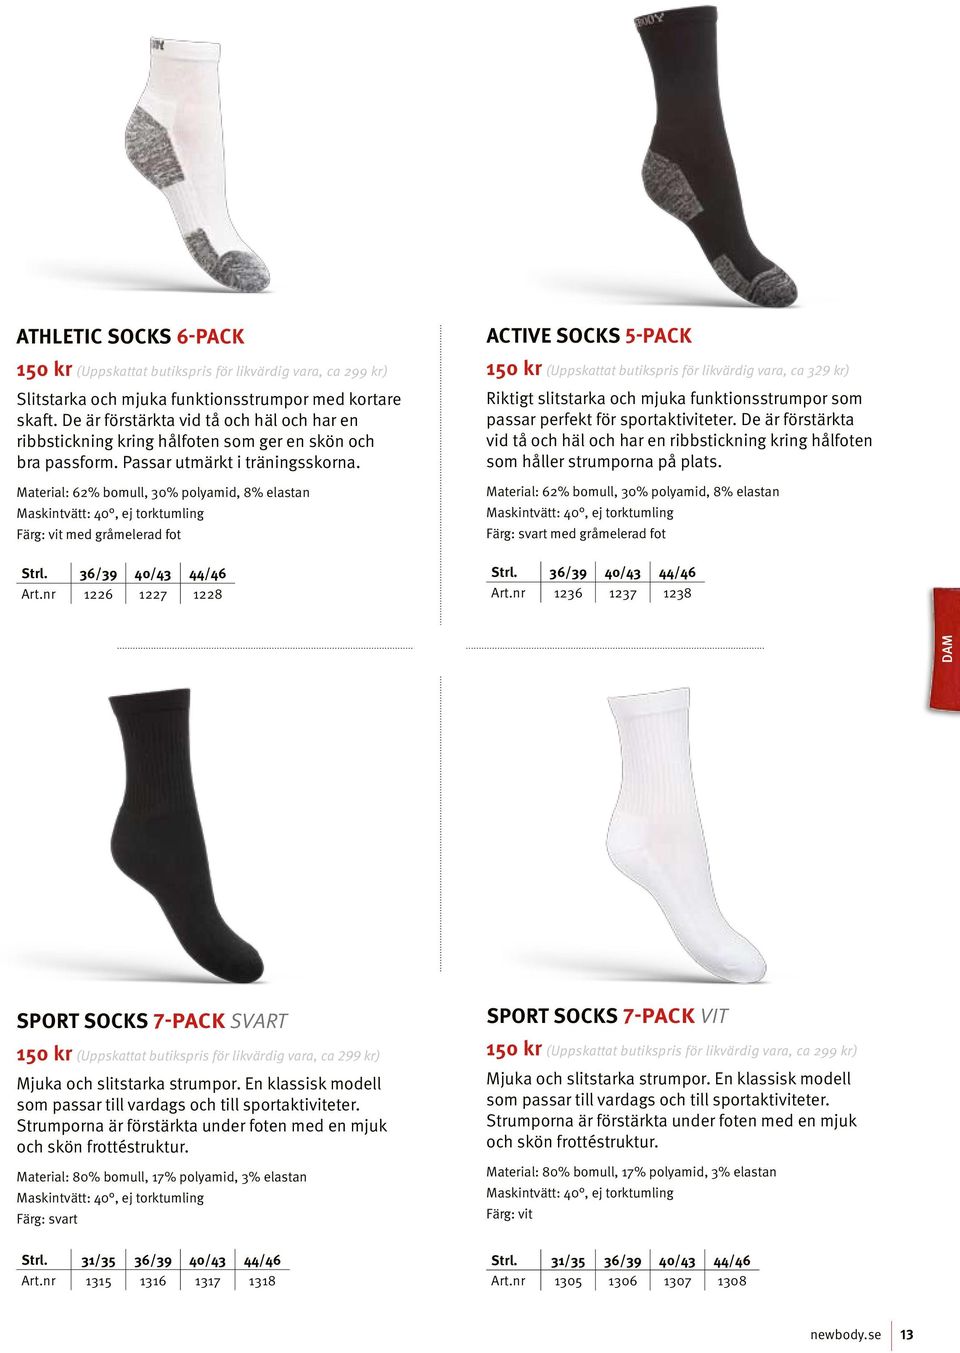 nr 1226 1227 1228 Active Socks 5-pack 150 kr (Uppskattat butikspris för likvärdig vara, ca 329 kr) Riktigt slitstarka och mjuka funktionsstrumpor som passar perfekt för sportaktiviteter.